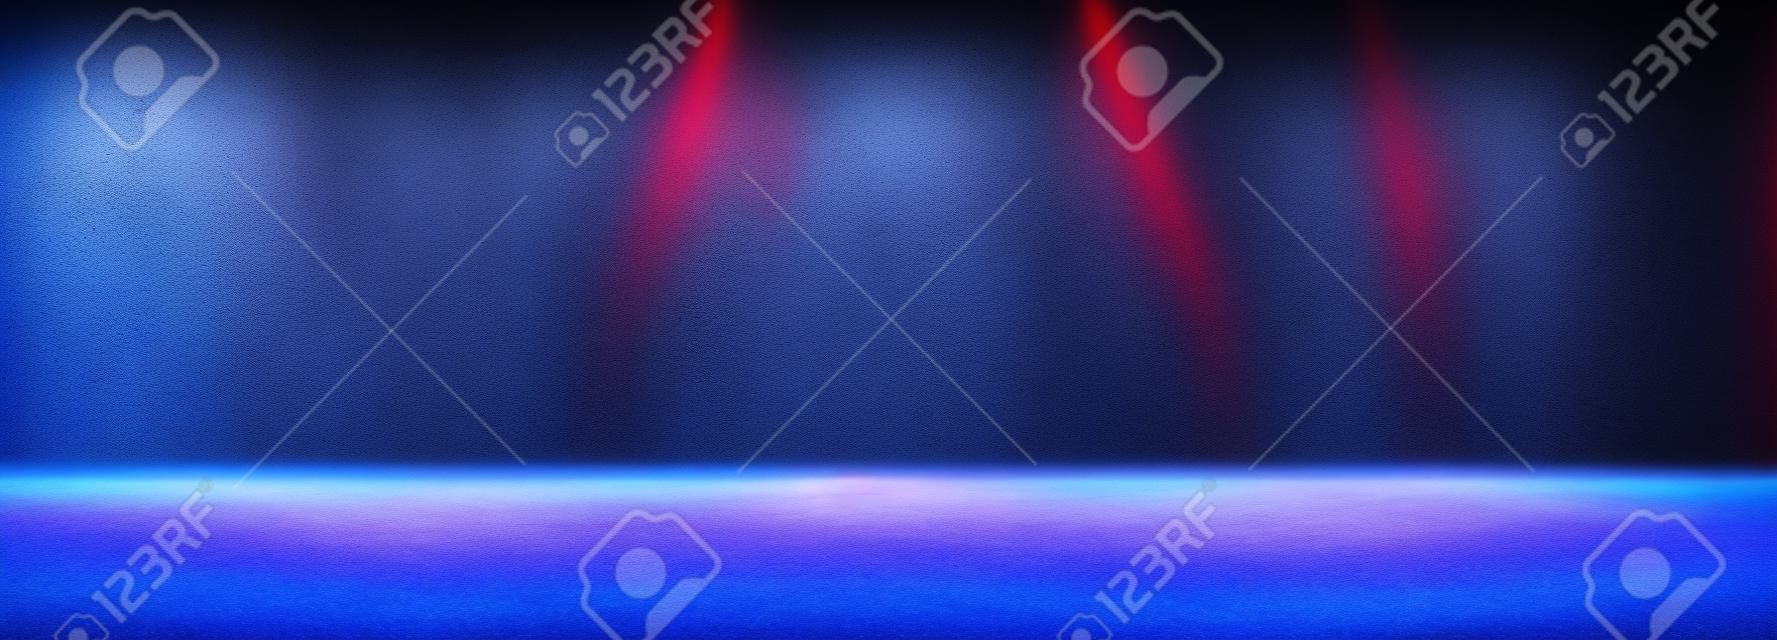 Espaço vazio da sala escura do estúdio com neblina ou névoa e efeito de iluminação vermelho e azul no fundo gradiente de piso de concreto.